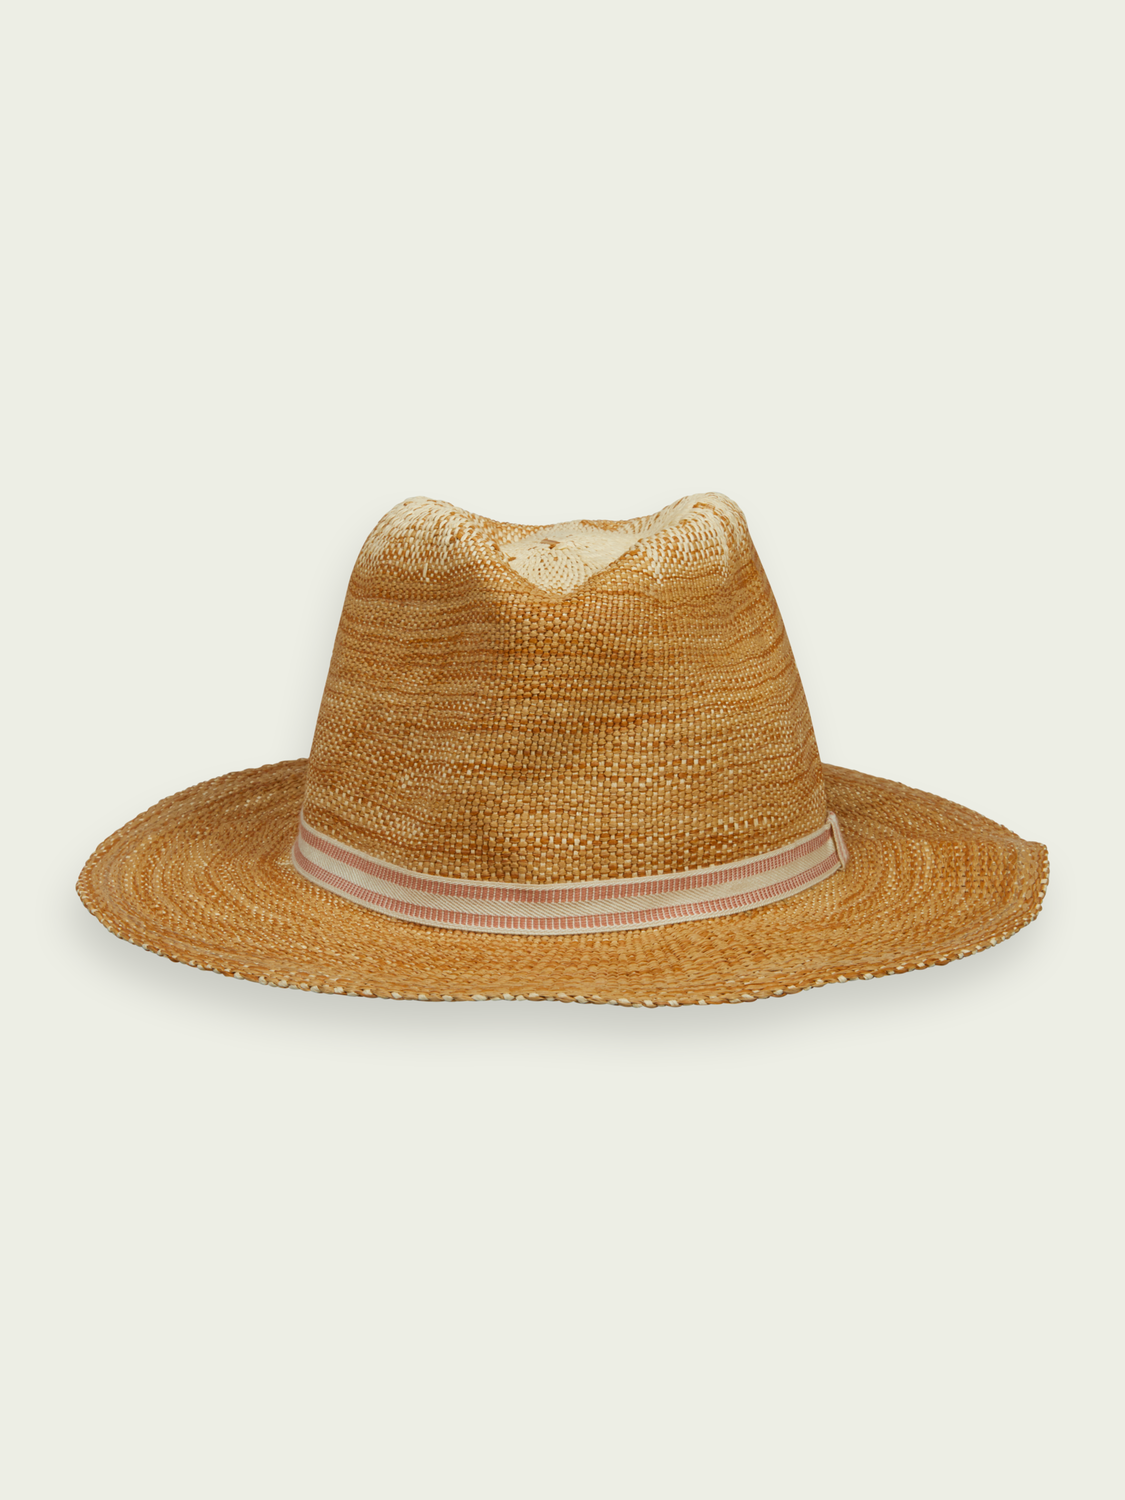 white fabric stylish summer hat Vintage 90s panama hat classic design unisex hat minimalistic hat